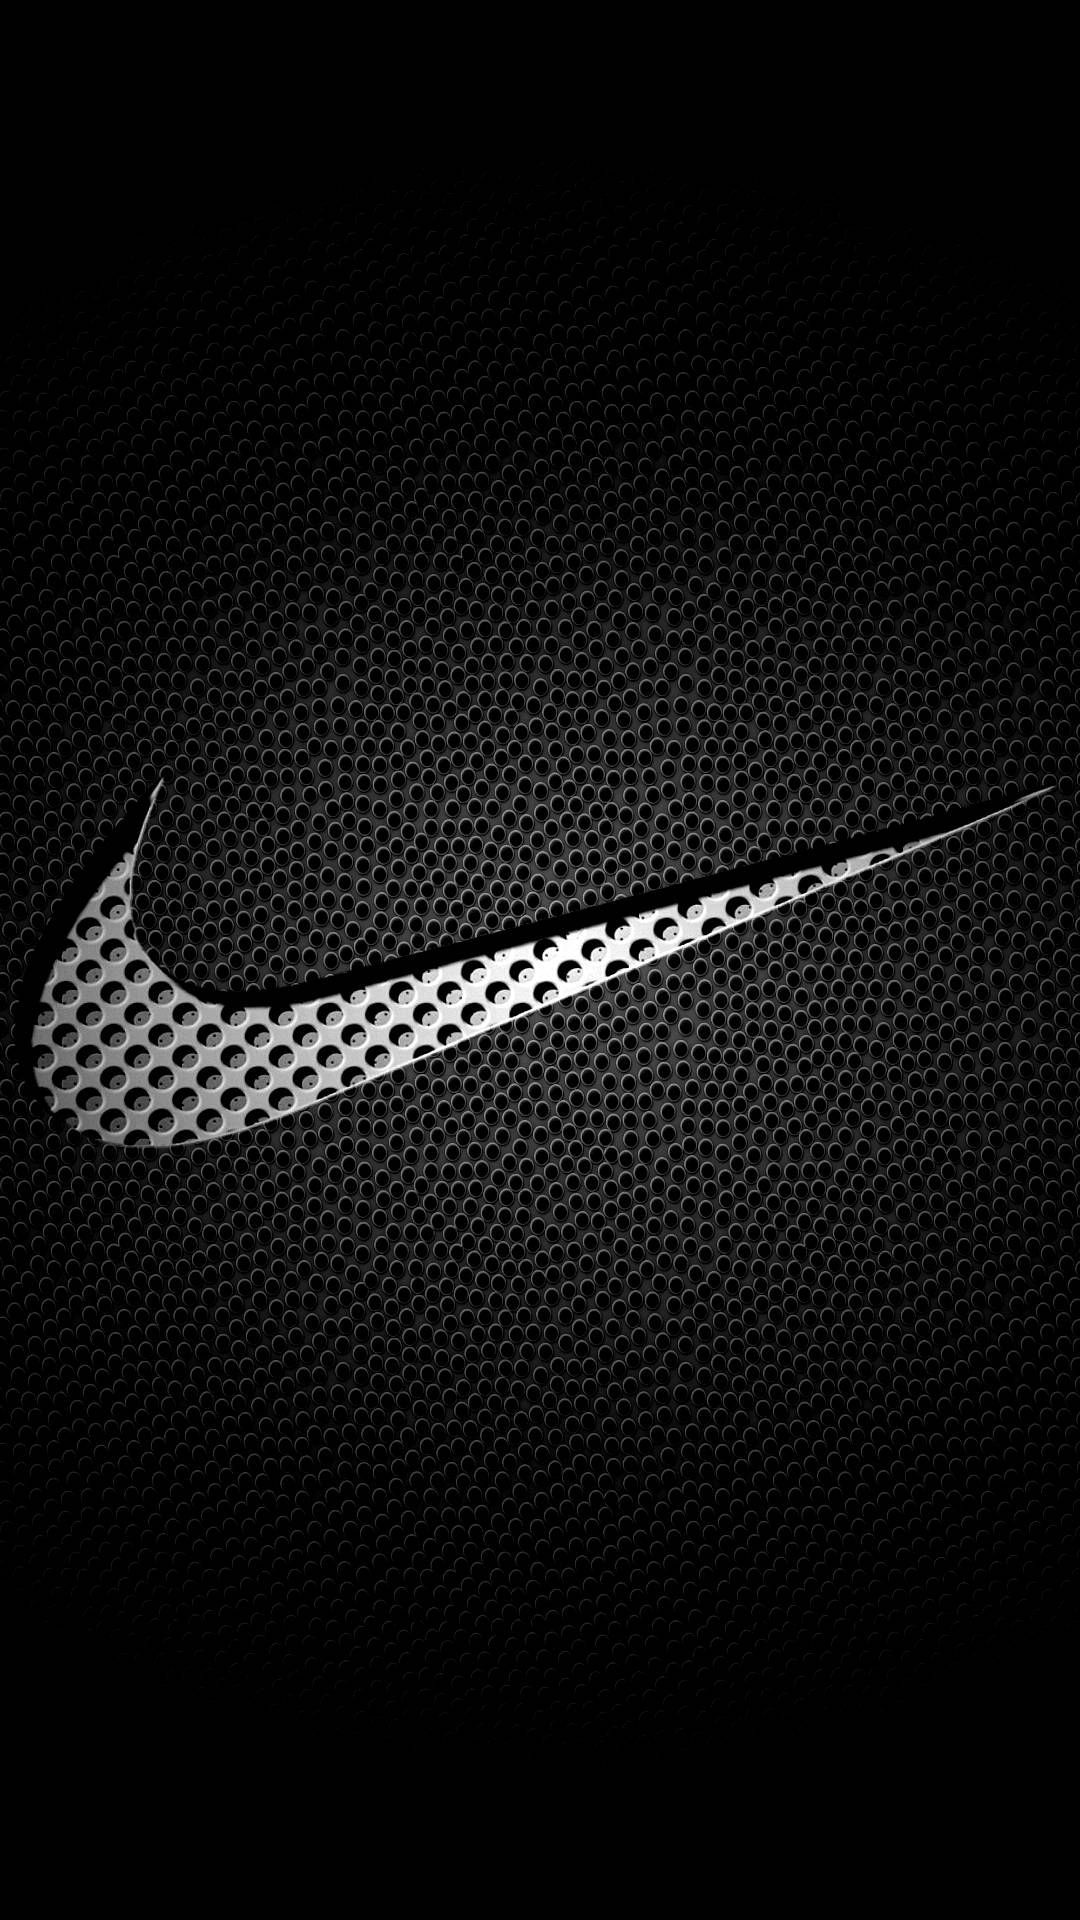 Cool nike basketball logo s on